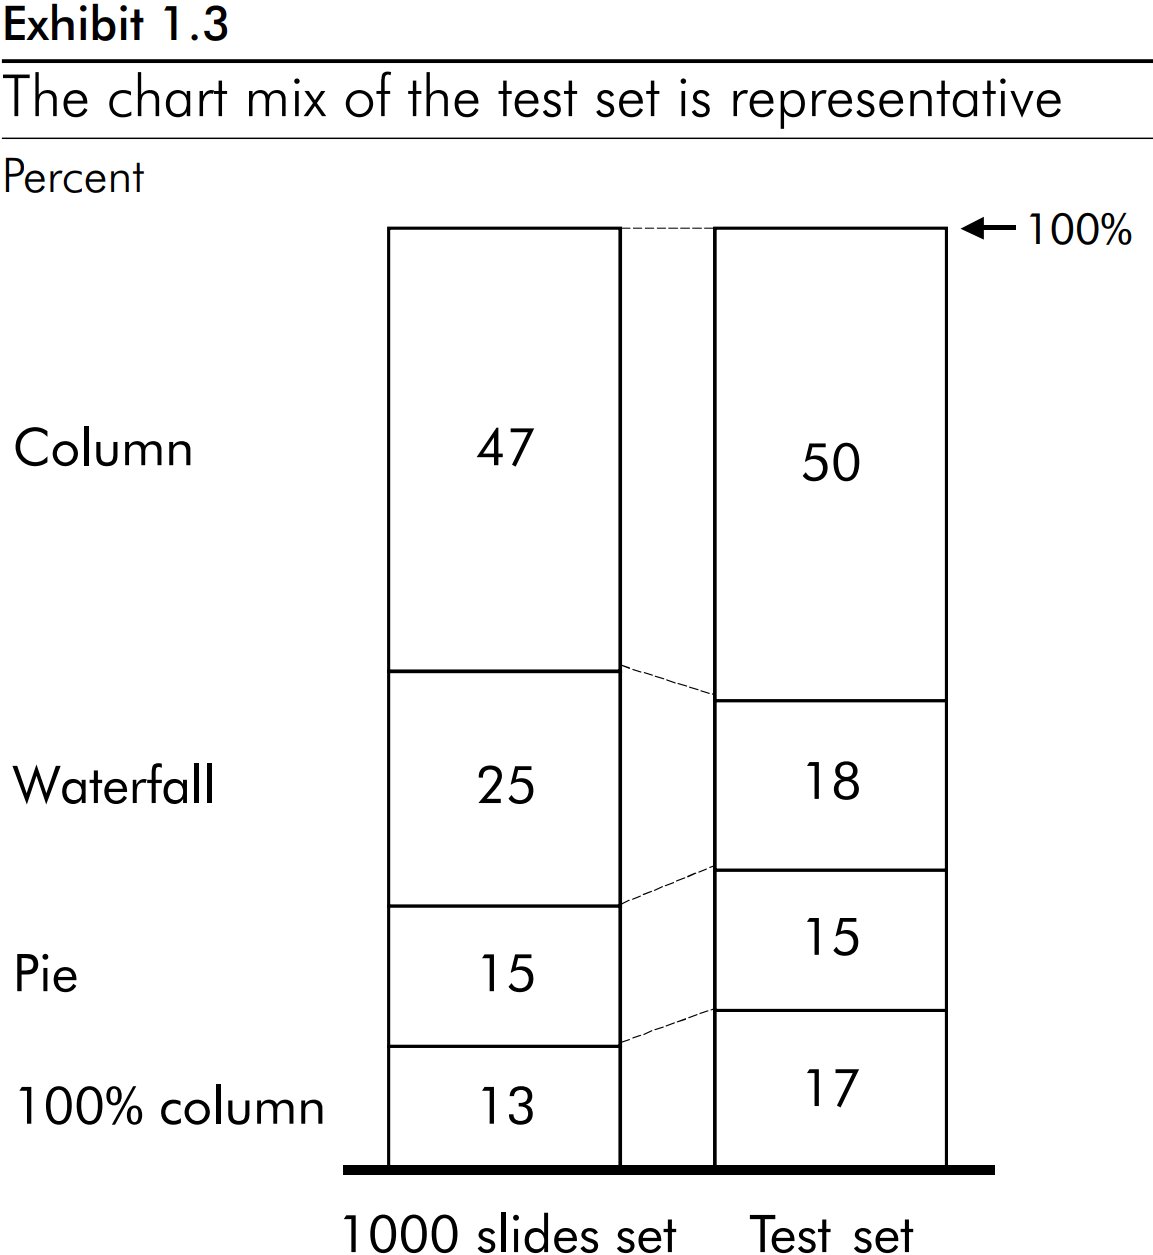 مخطط عمودي مكدس يوضح أن أنواع المخططات في مجموعة الاختبار تمثل هذه النتيجة.